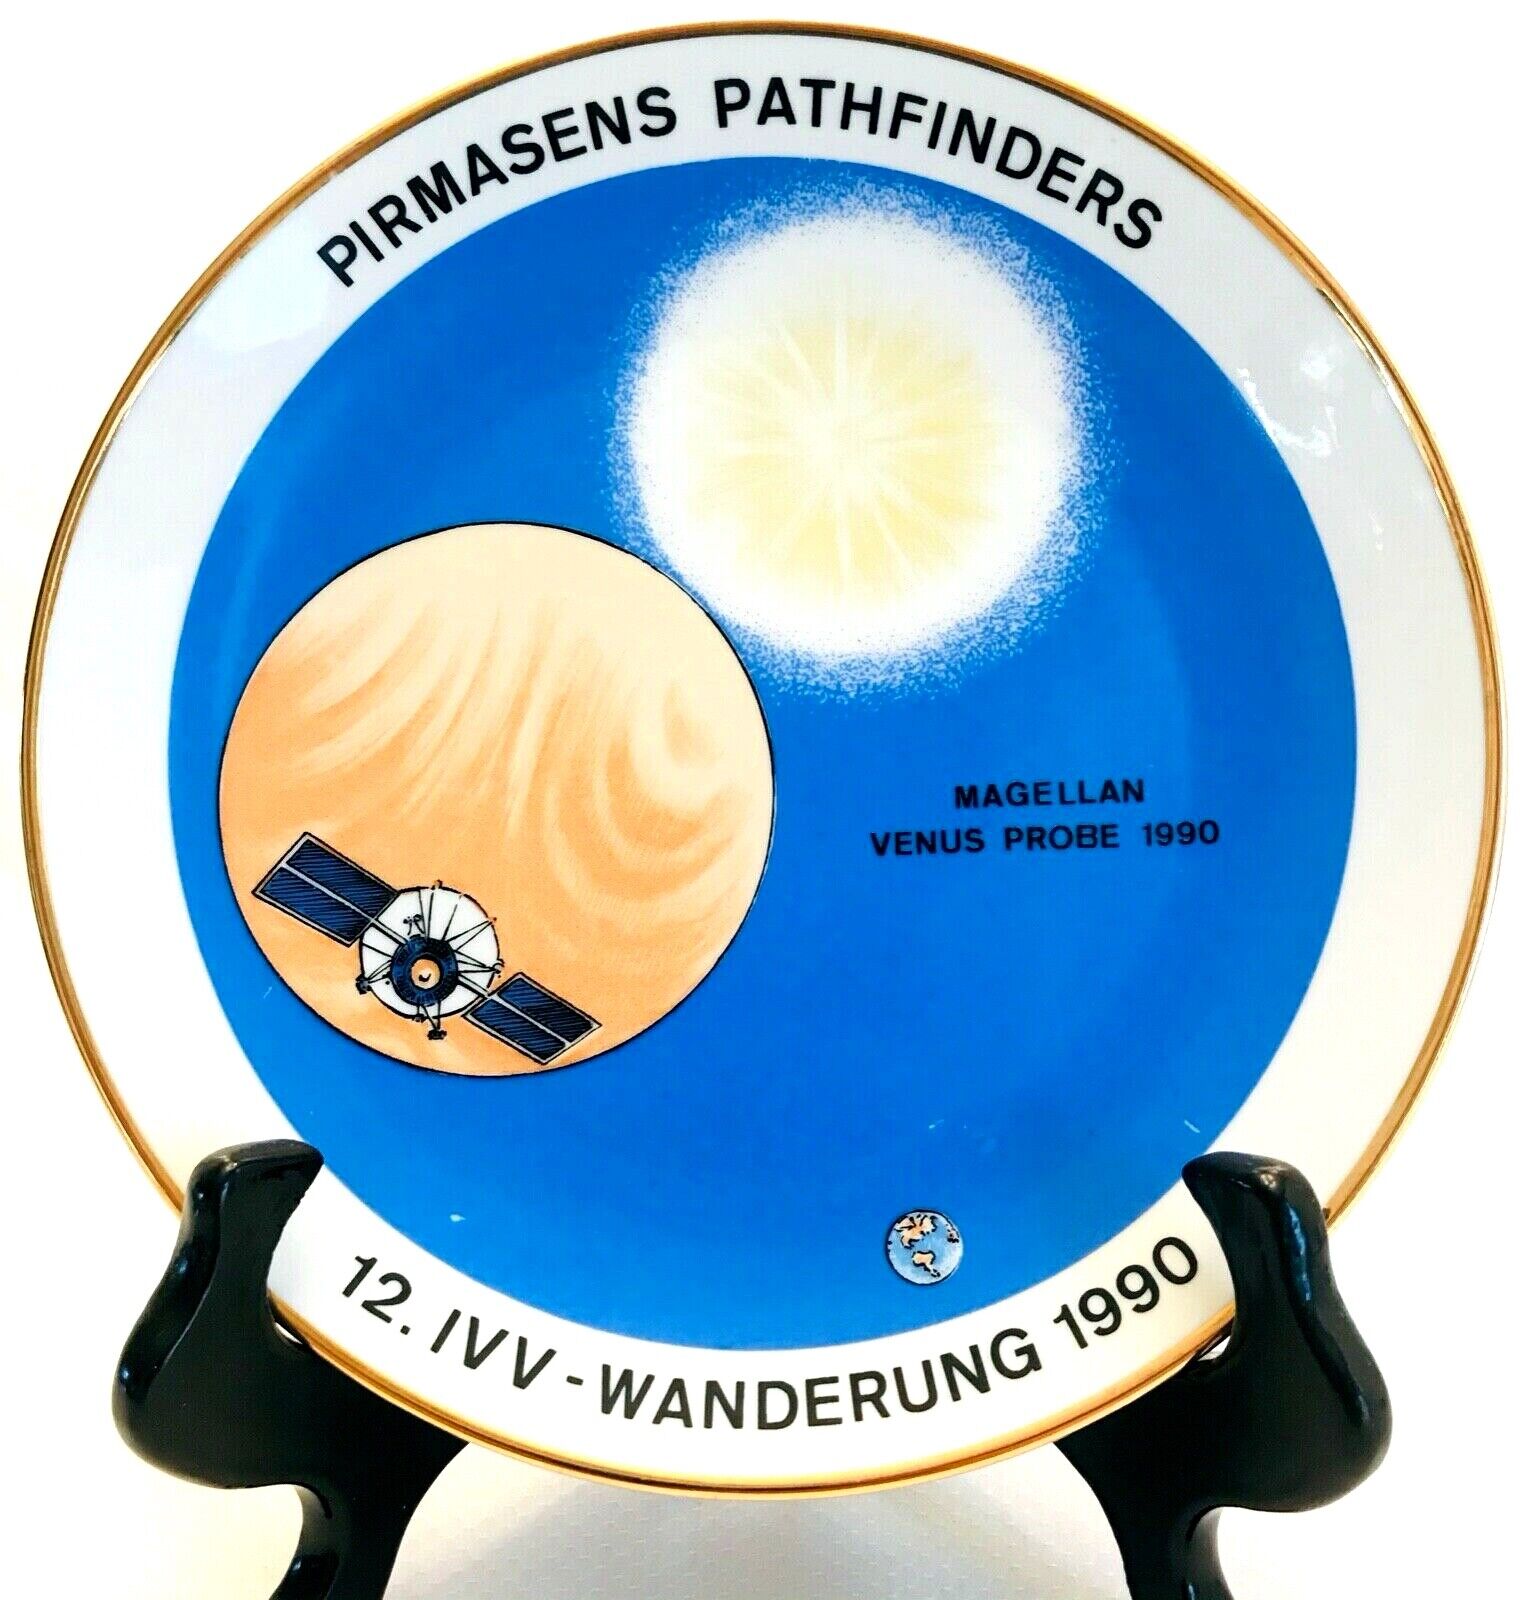 Germany Collector Plate 1990 Magellan Venus Probe Pirmasens Pathfinders Adelmann